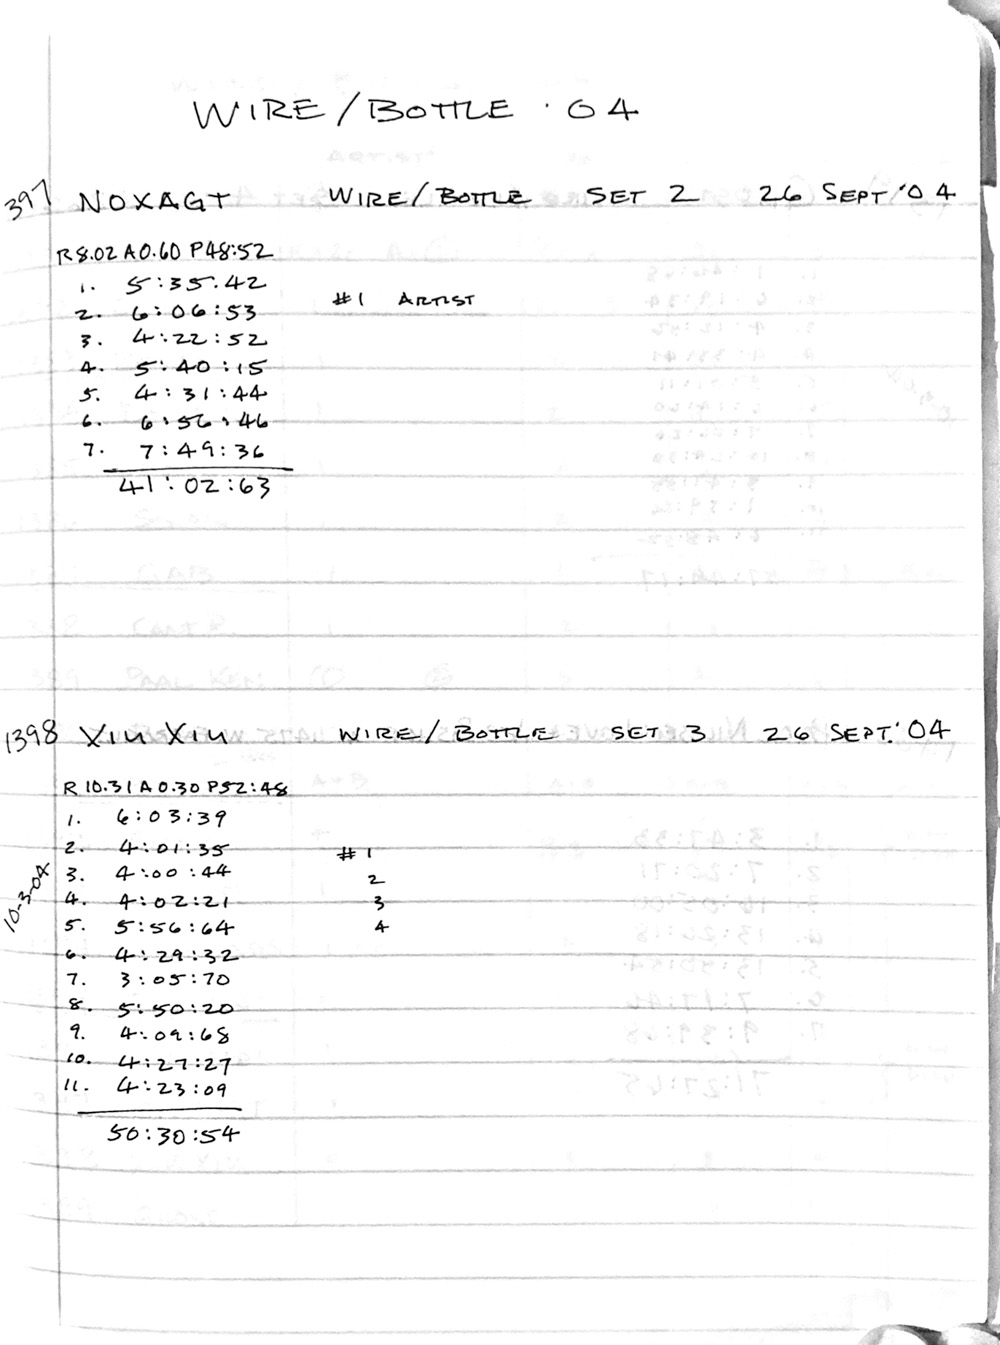 Malachi Ritscher Recording Notebook — Xiu Xiu Concert_Page_2_Image_0001